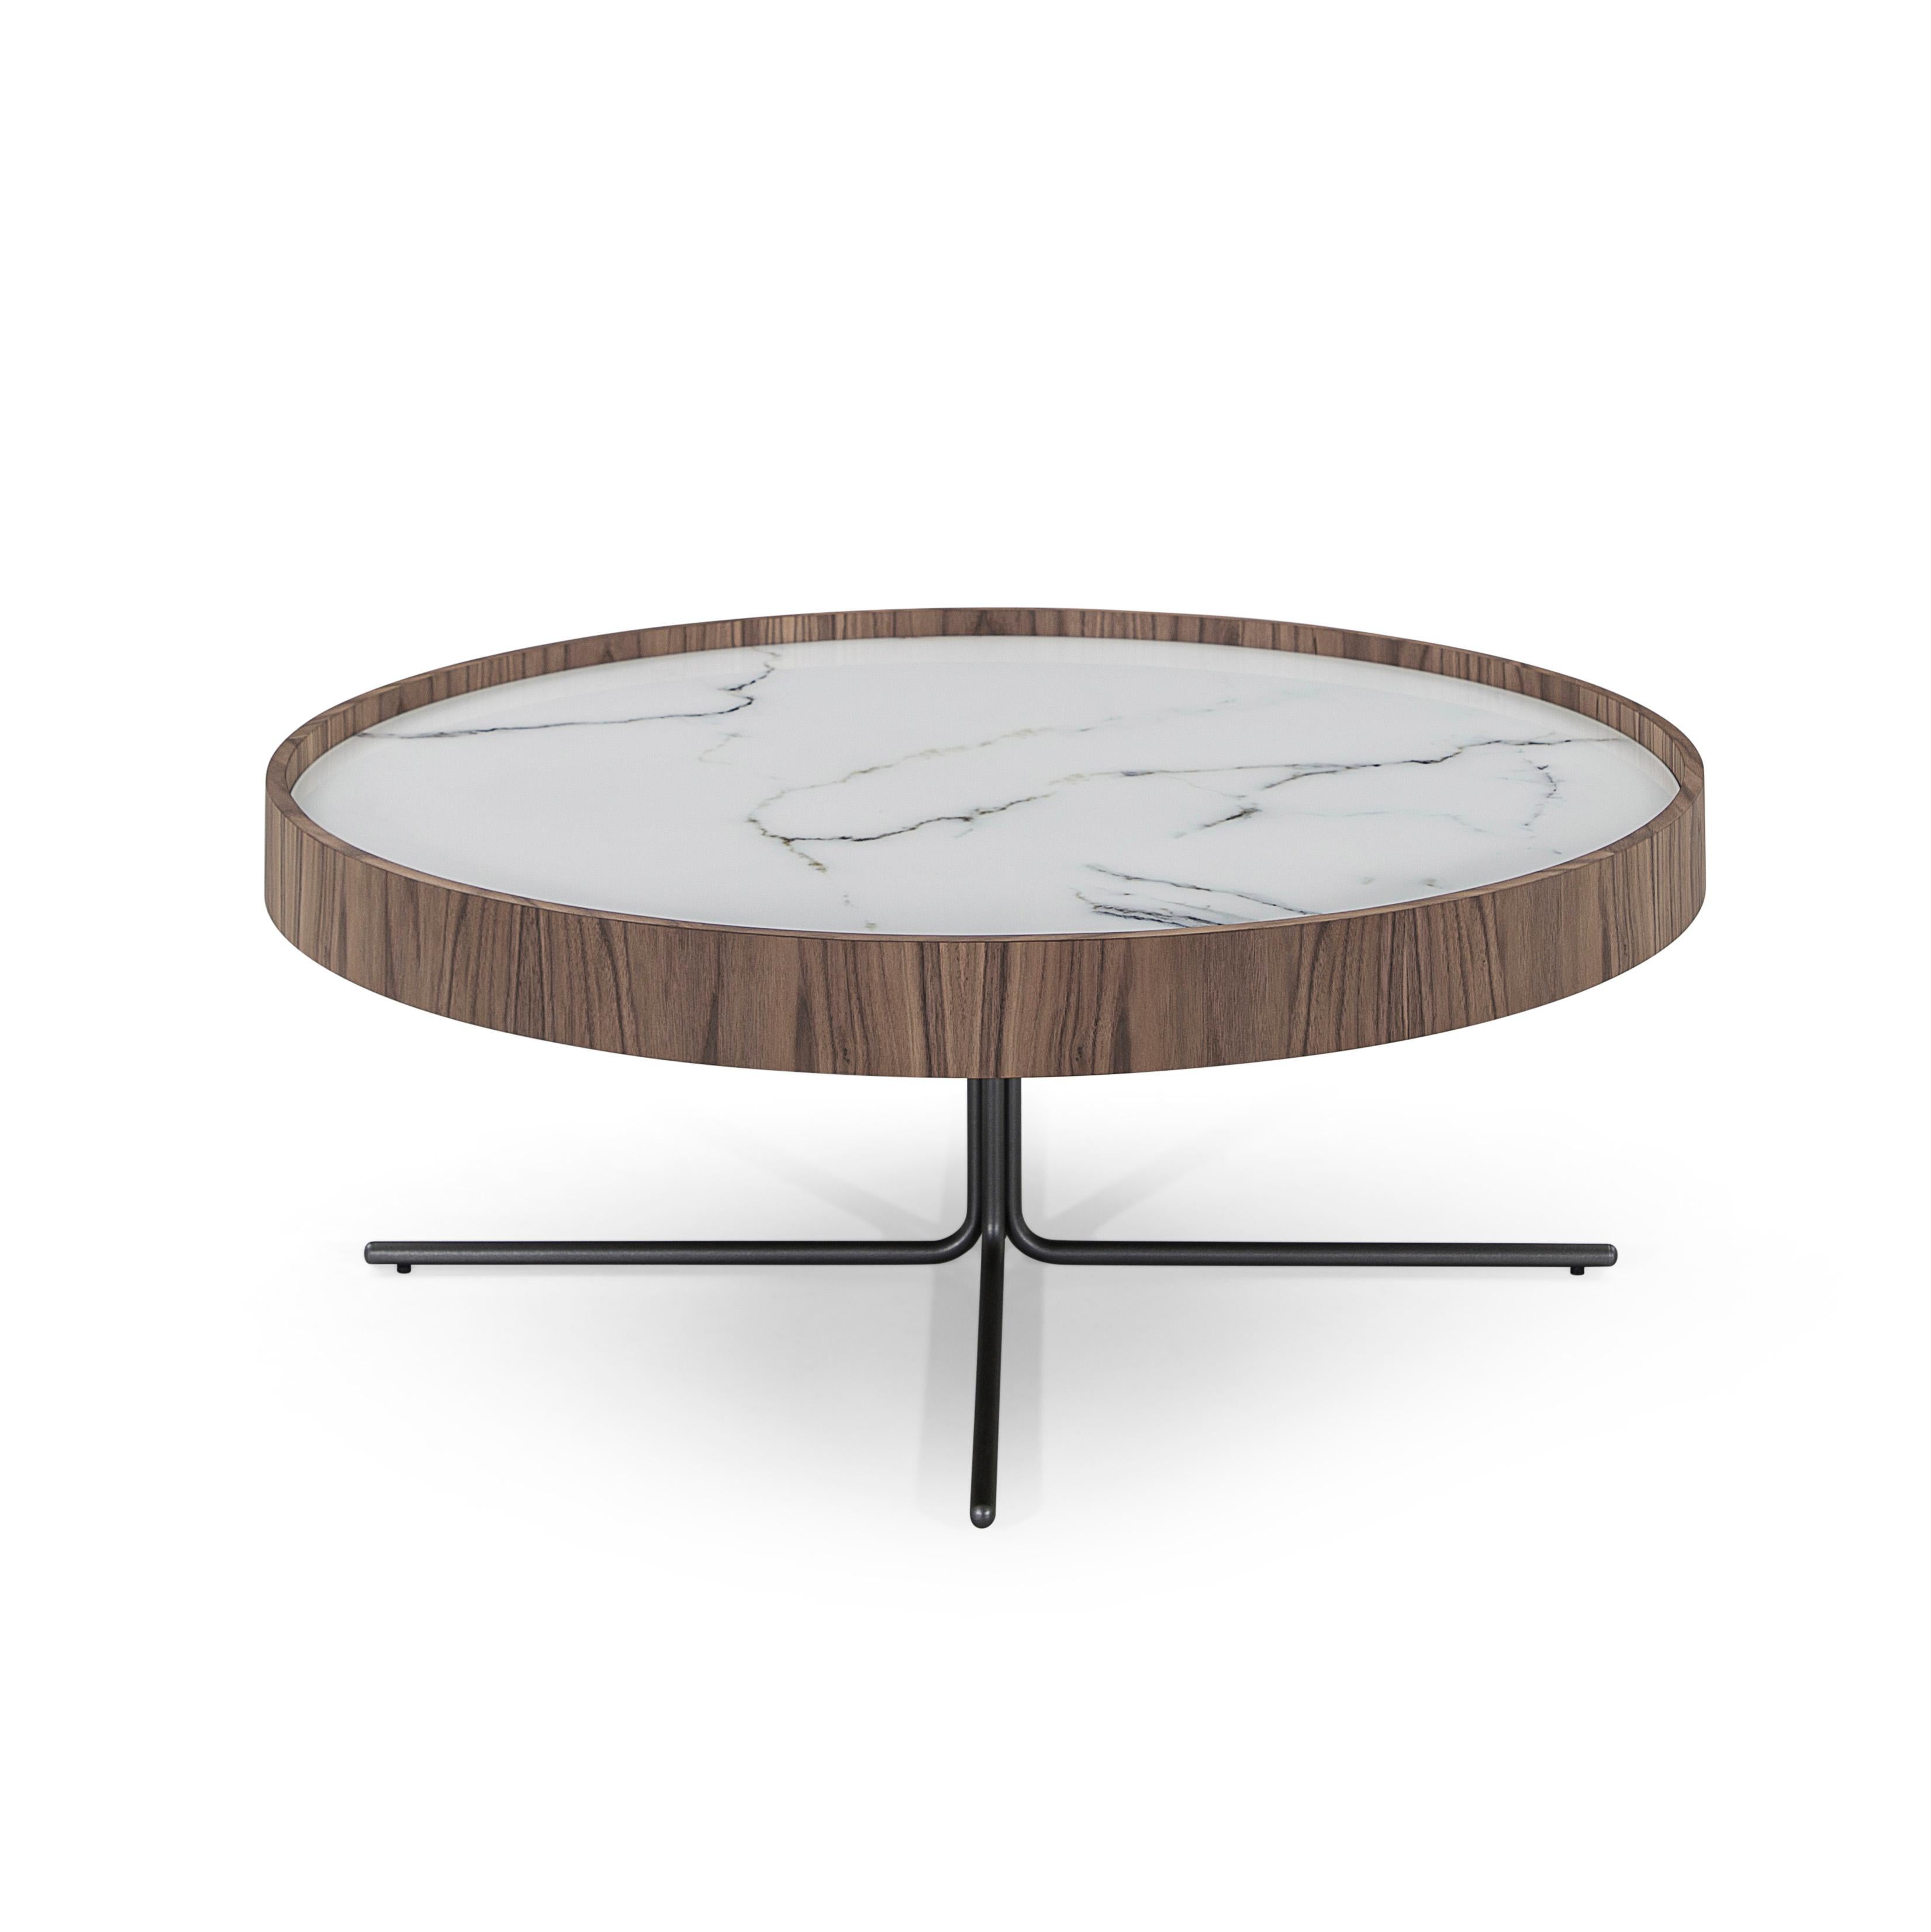 Die atemberaubenden Regia-Beistelltische bestehen aus einem Satz von zwei Tischen mit unterschiedlichen Durchmessern und Höhen. Die Tischplatte besteht aus weißem Glas, das einen schönen weißen Marmor mit schwarzen Adern imitiert. Kombiniert mit